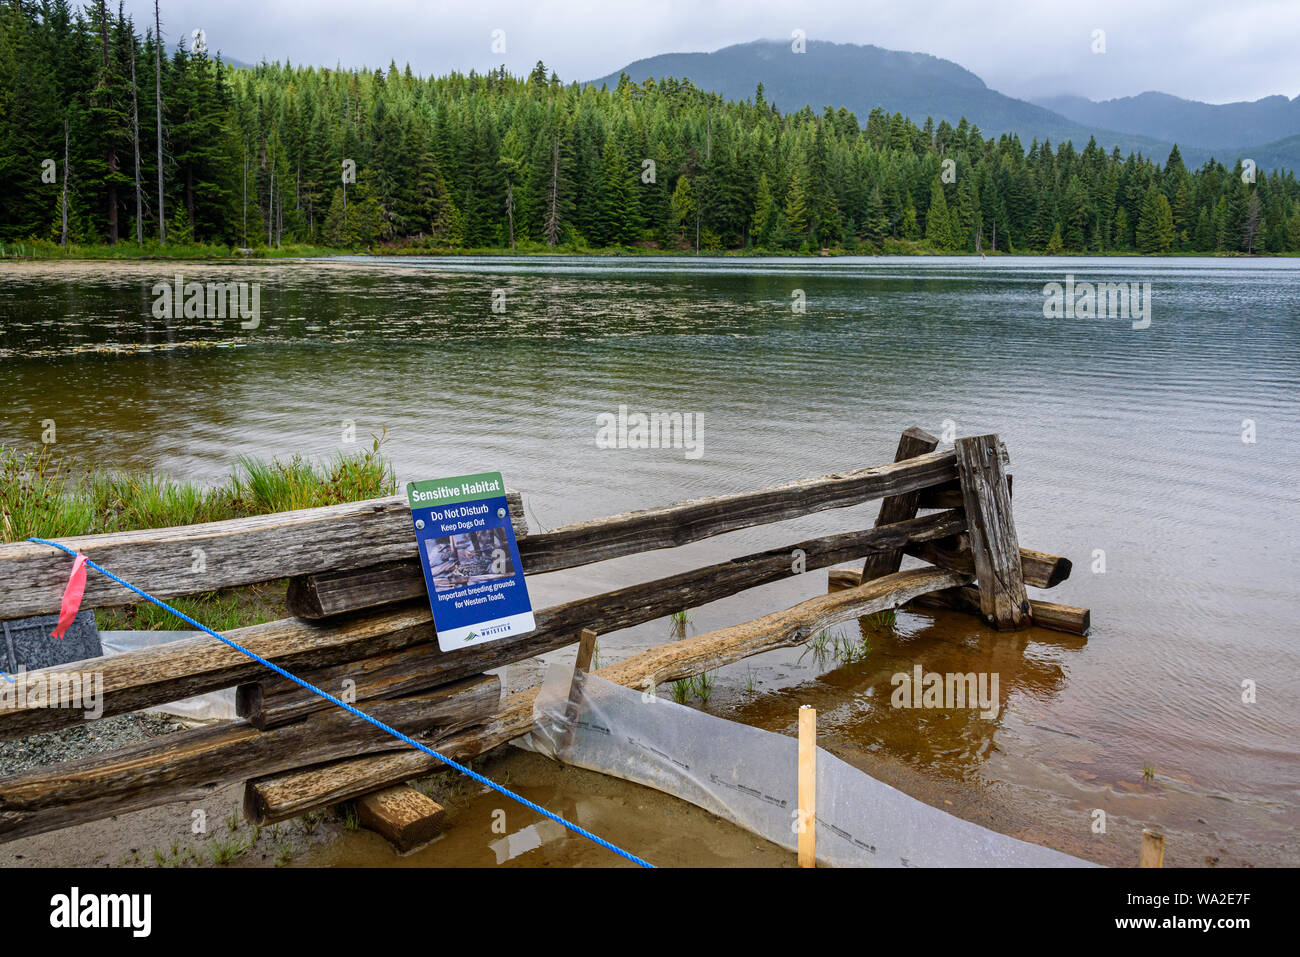 WHISTLER, BC/CANADA - Agosto 2, 2019: habitat sensibili segno sulla rampa di split recinto sul lago perduto park beach. Lago perduto il paesaggio con le barriere di protezione Foto Stock